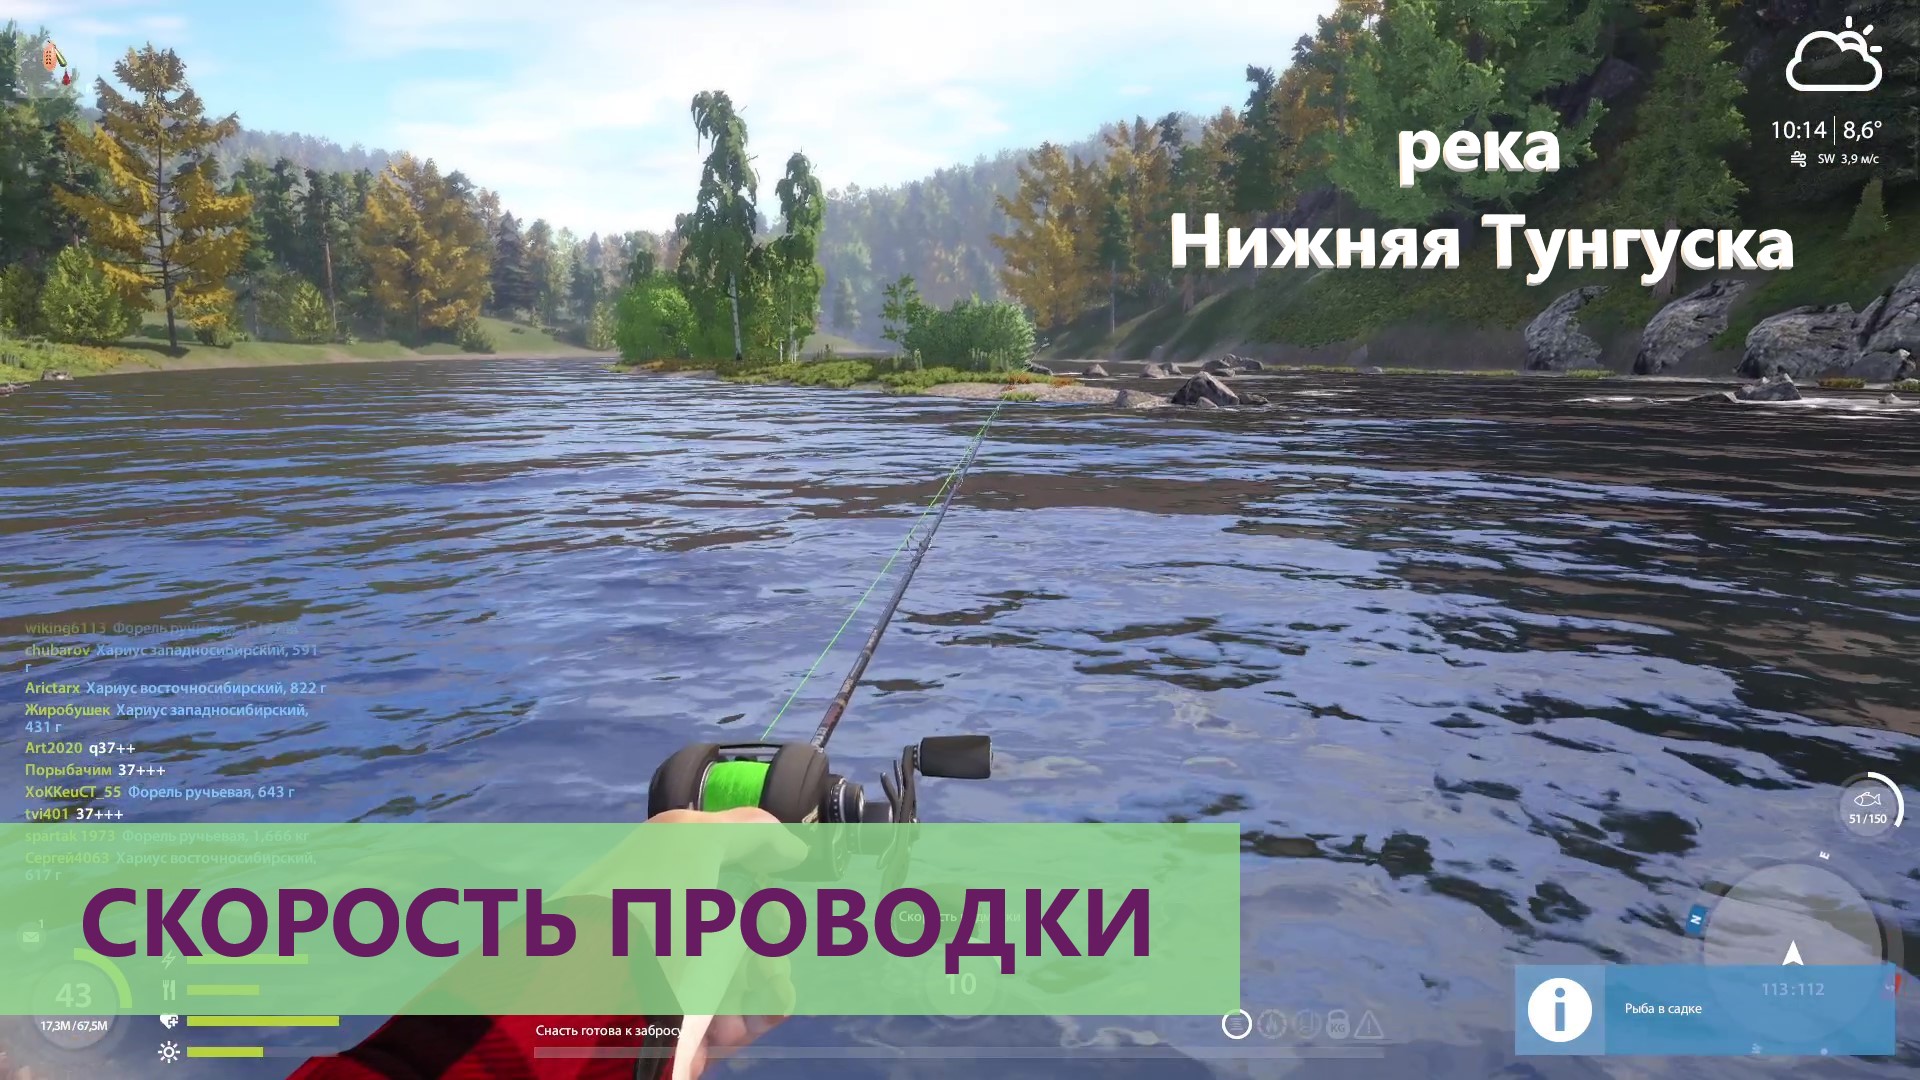 Русская рыбалка 4 - река Нижняя Тунгуска - Скорость проводки